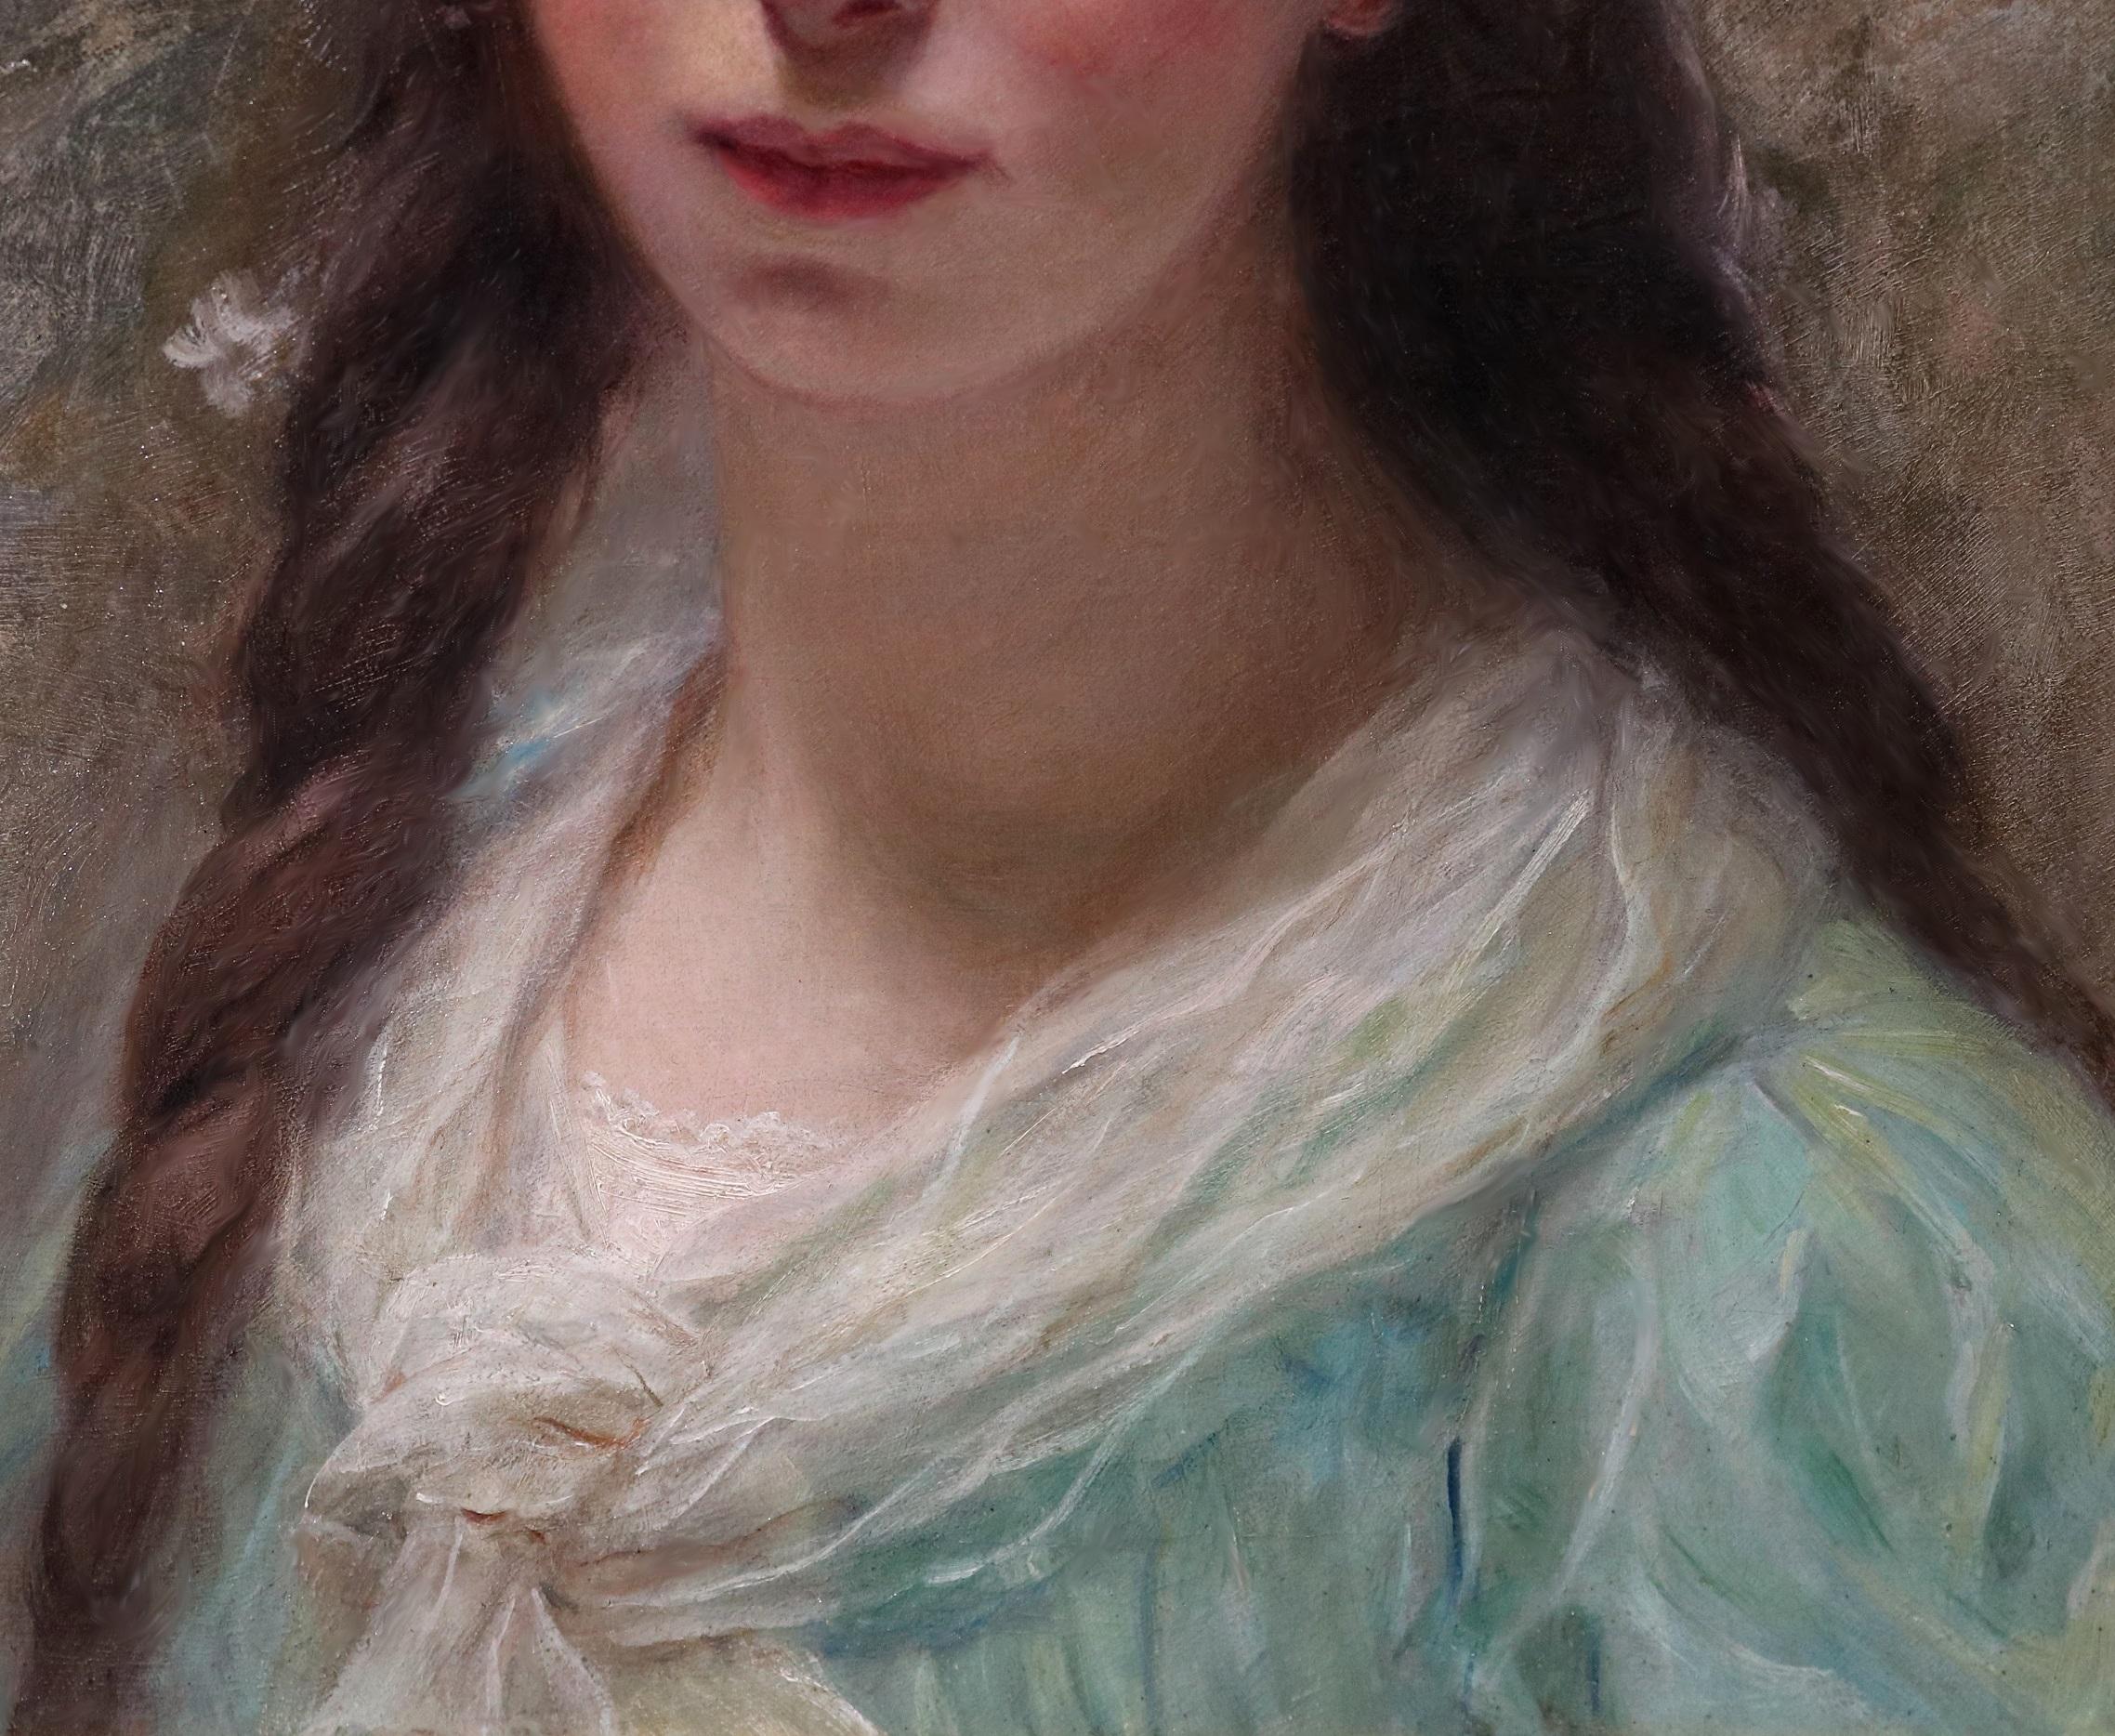 La Couronne de Marguerite' par Édouard-Louis-Lucien Cabane (1857-1942). 

Le tableau - qui représente une jeune beauté française portant une couronne de marguerites - est signé par l'artiste et daté de 1915. Elle est suspendue dans un cadre en métal